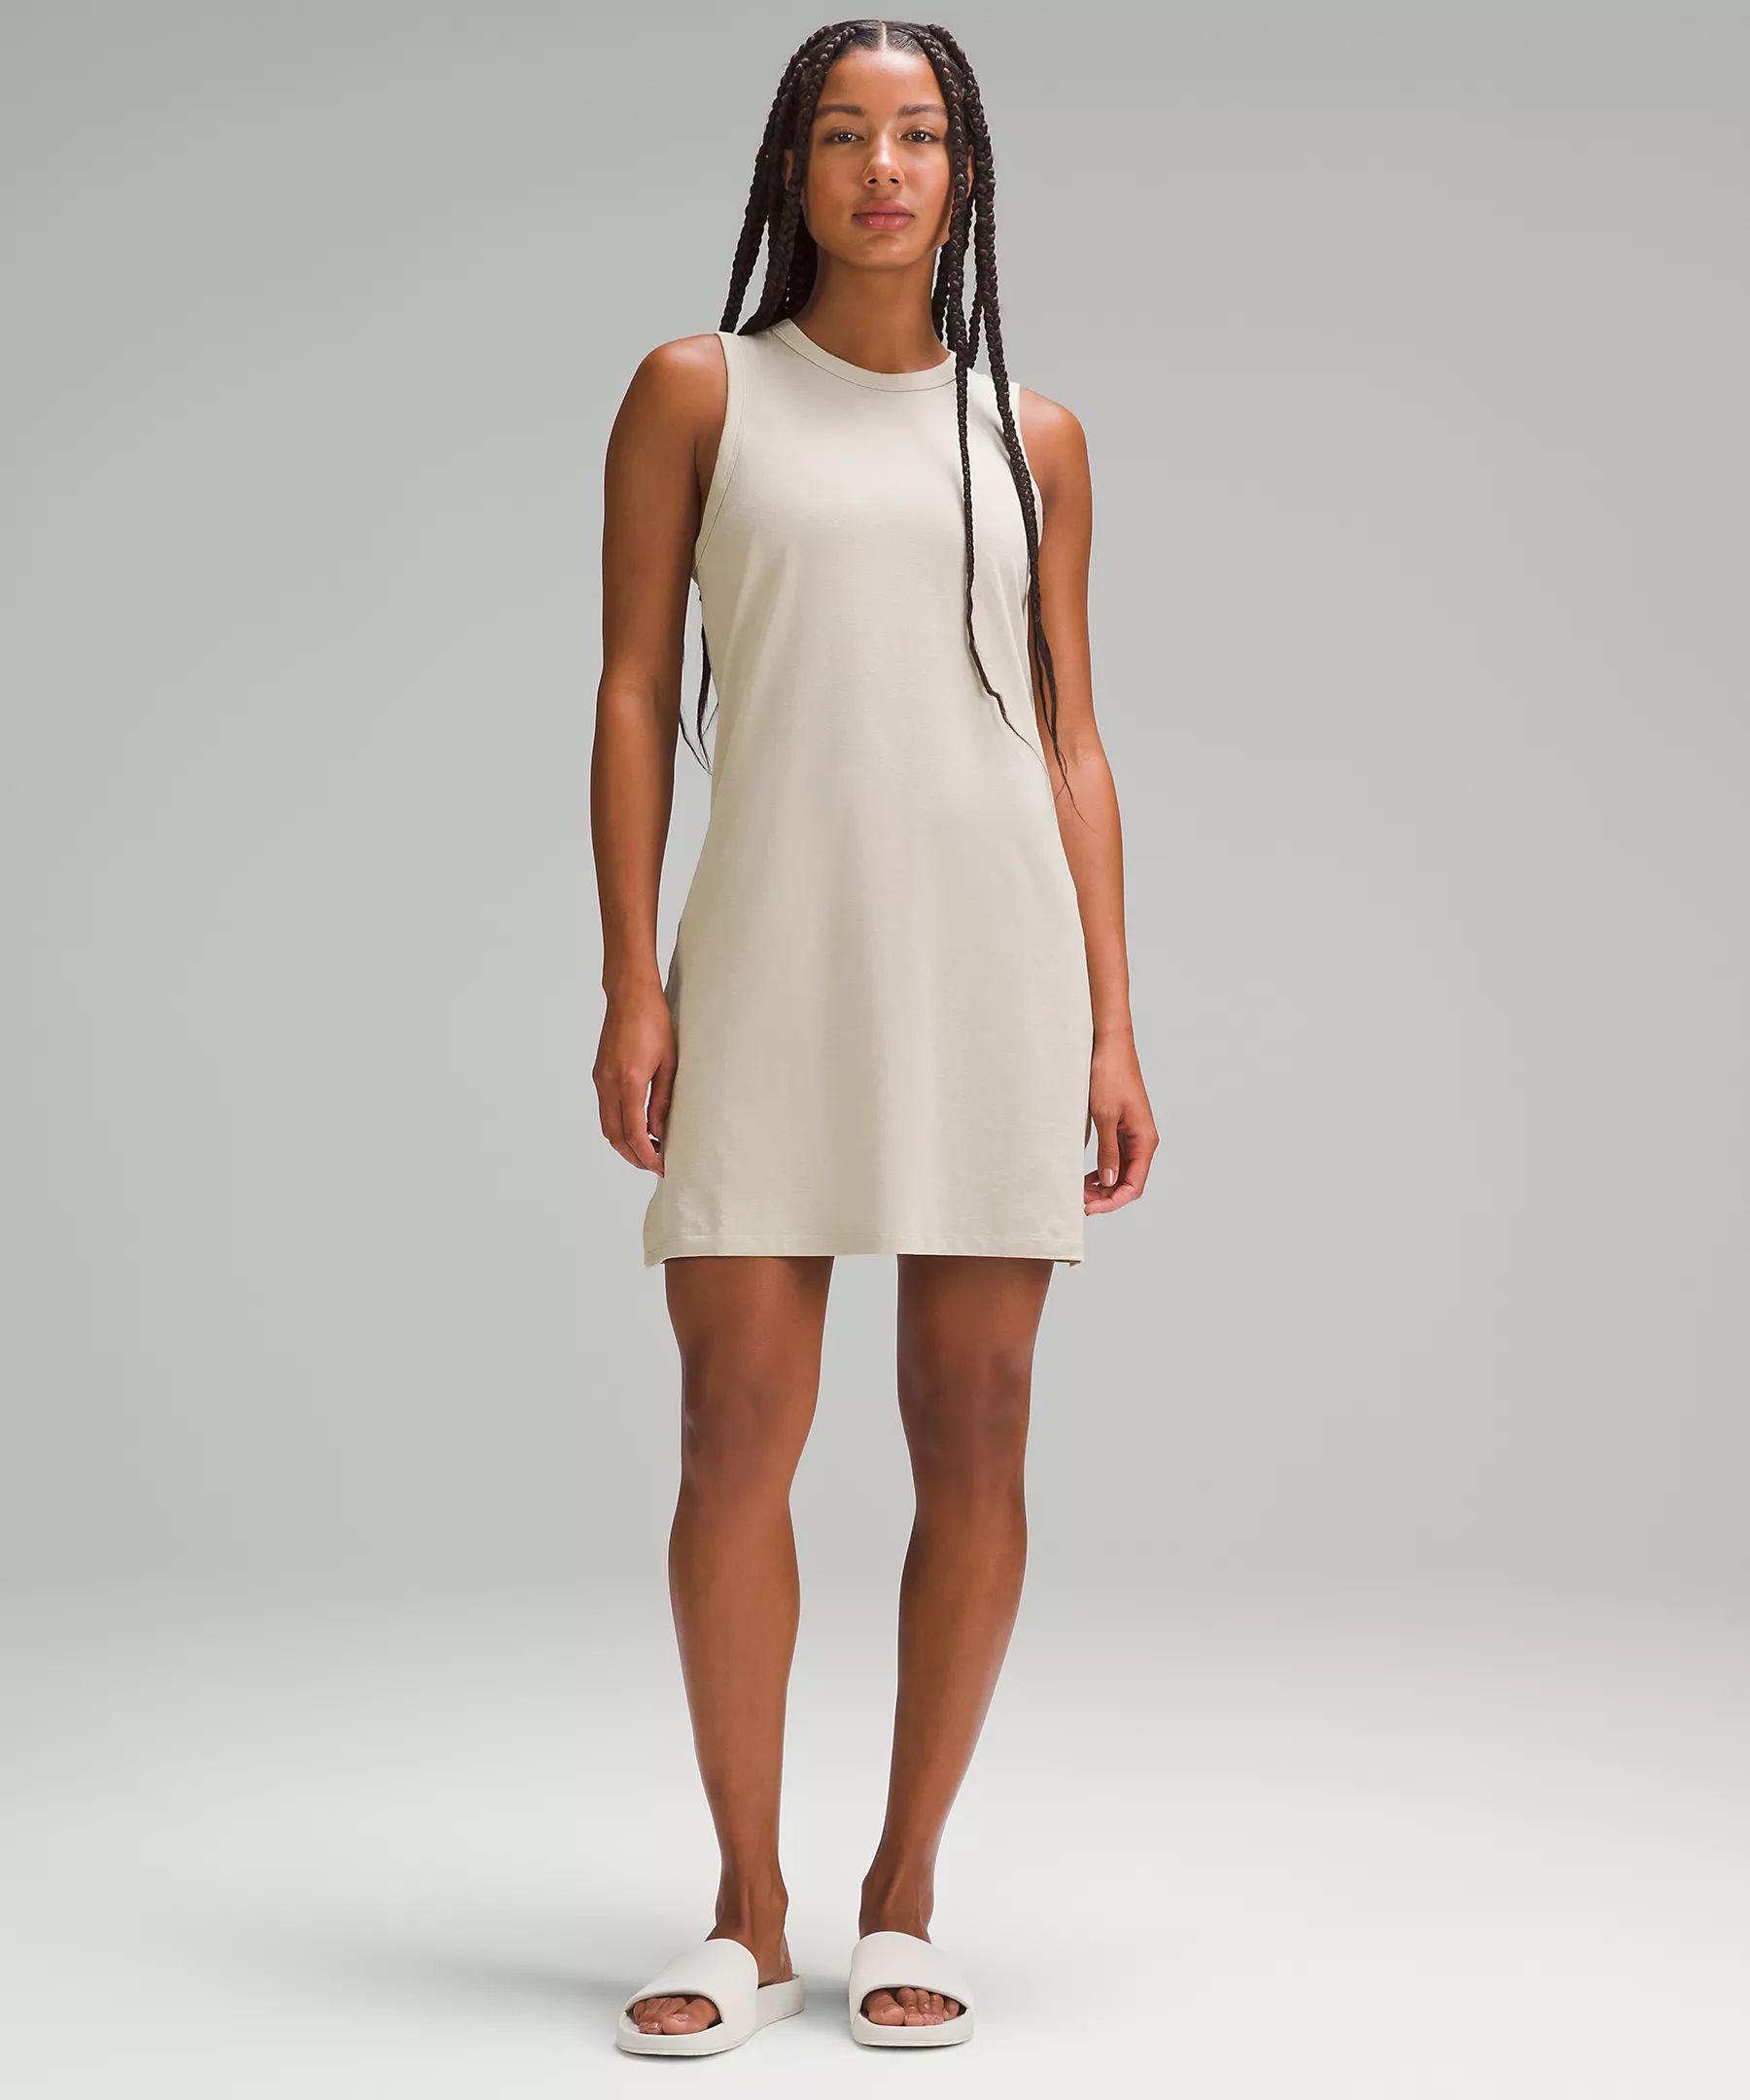 Classic-Fit Cotton-Blend Dress | Lululemon (US)